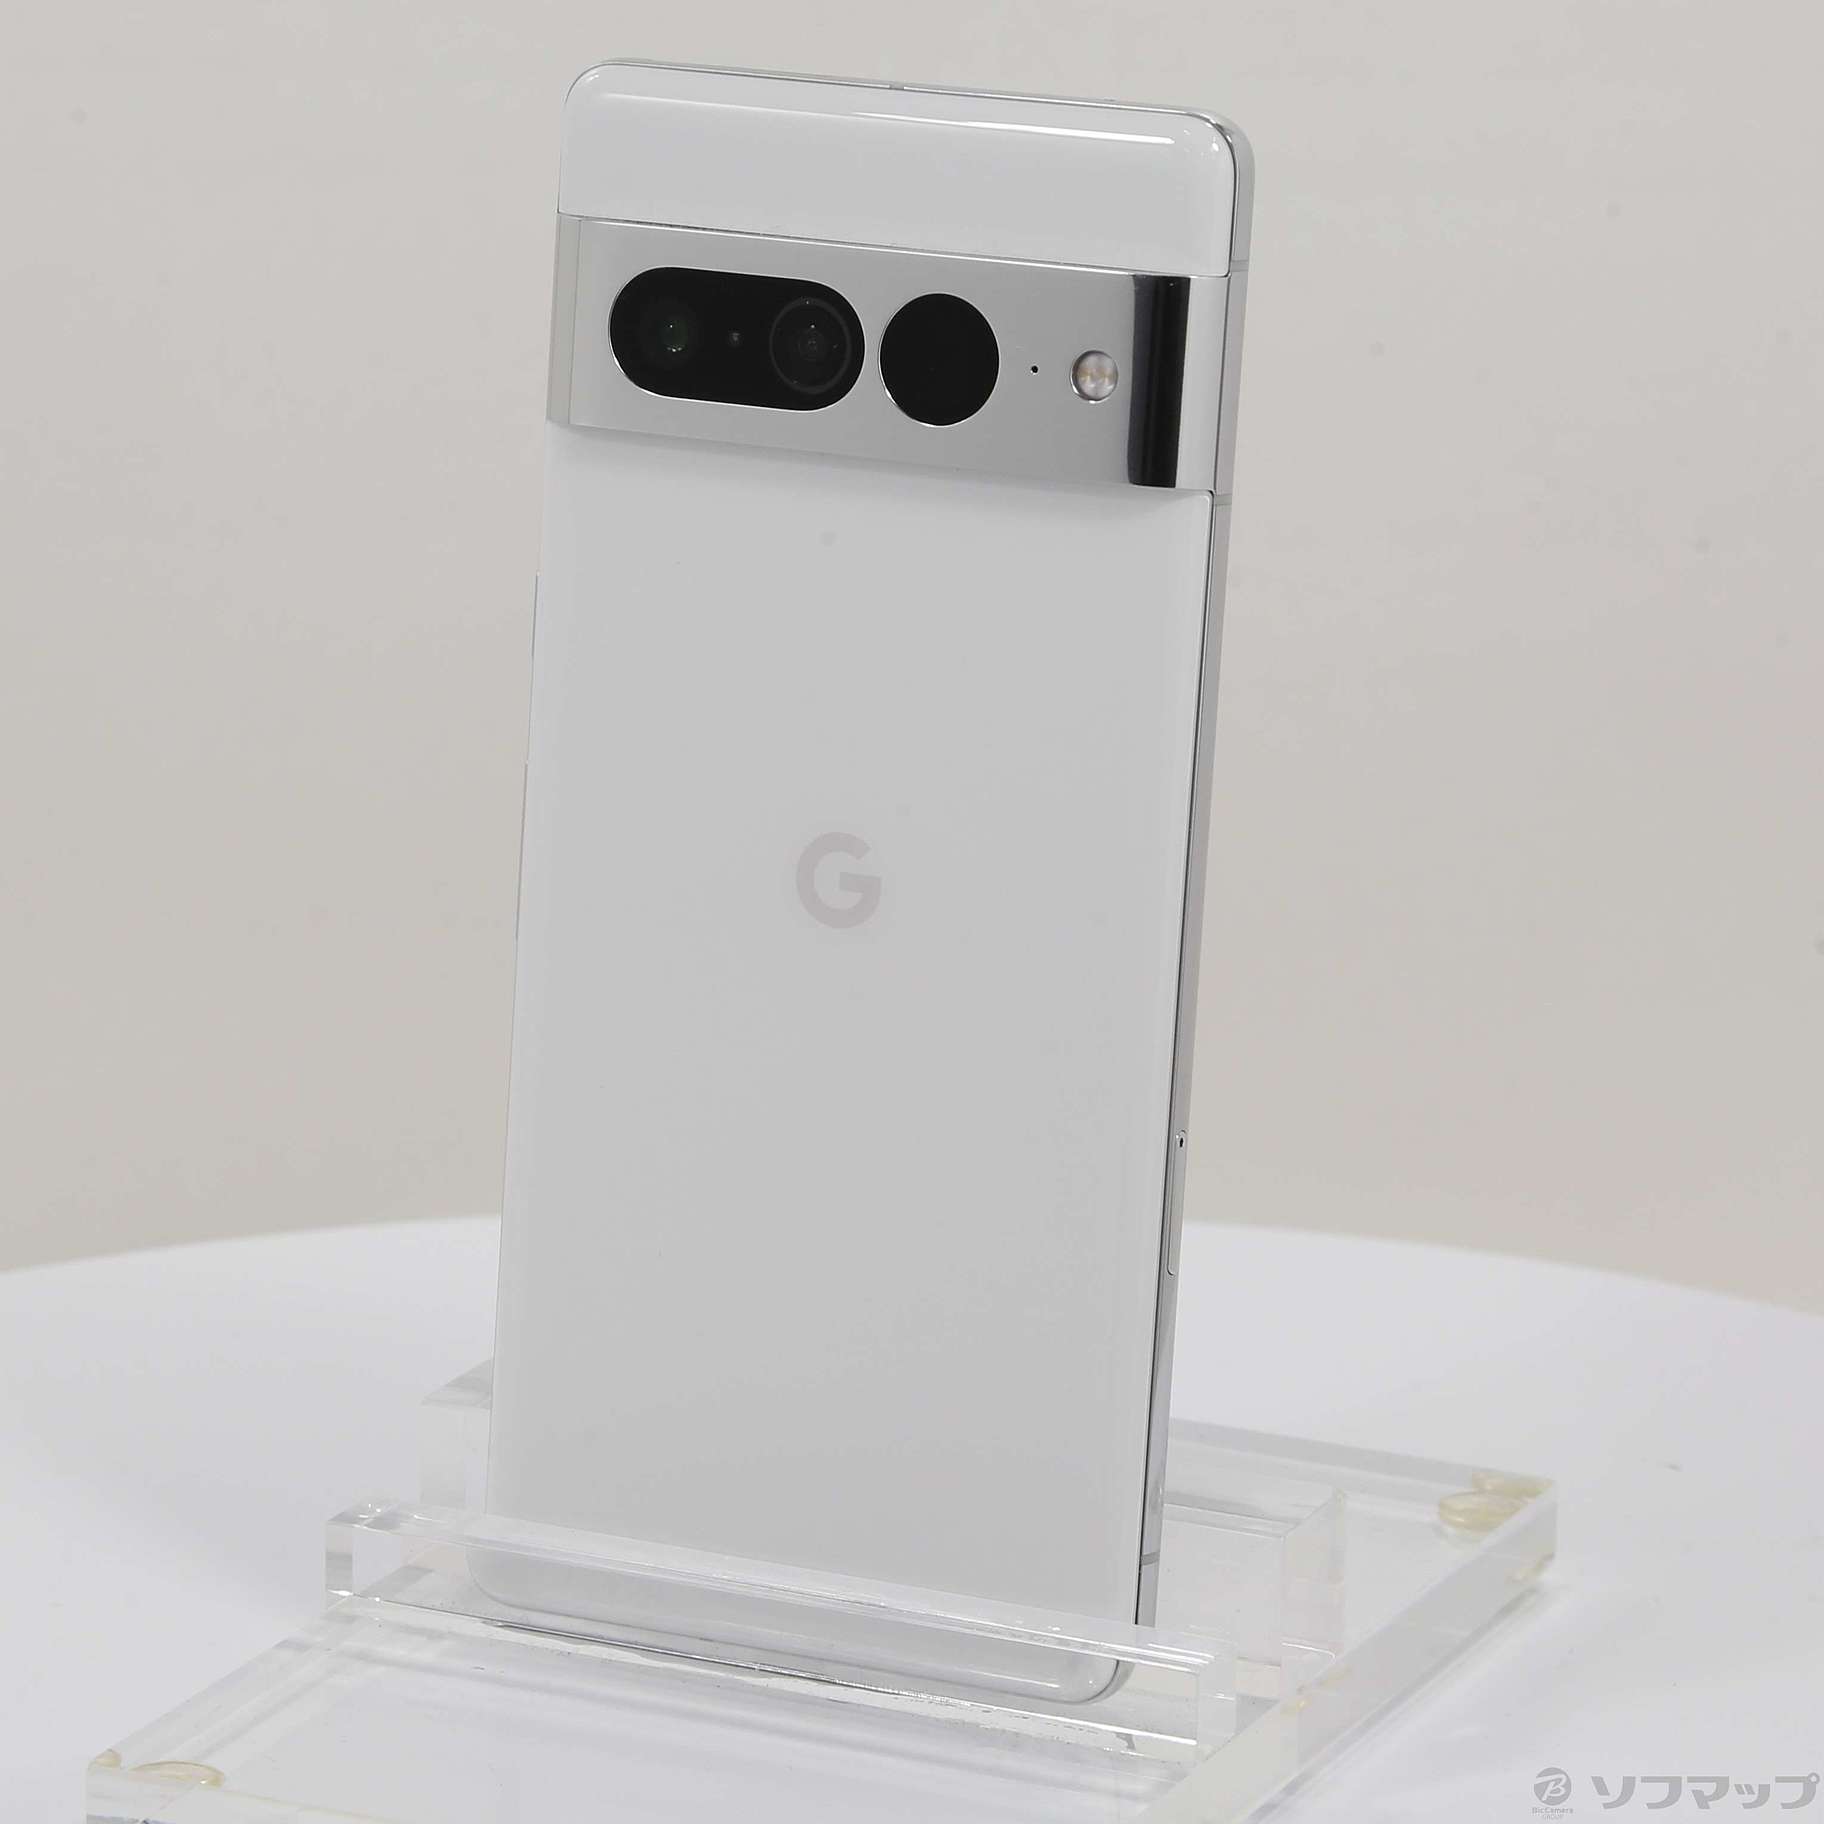 【新品未使用】Google Pixel 7 Pro 256GB Snow